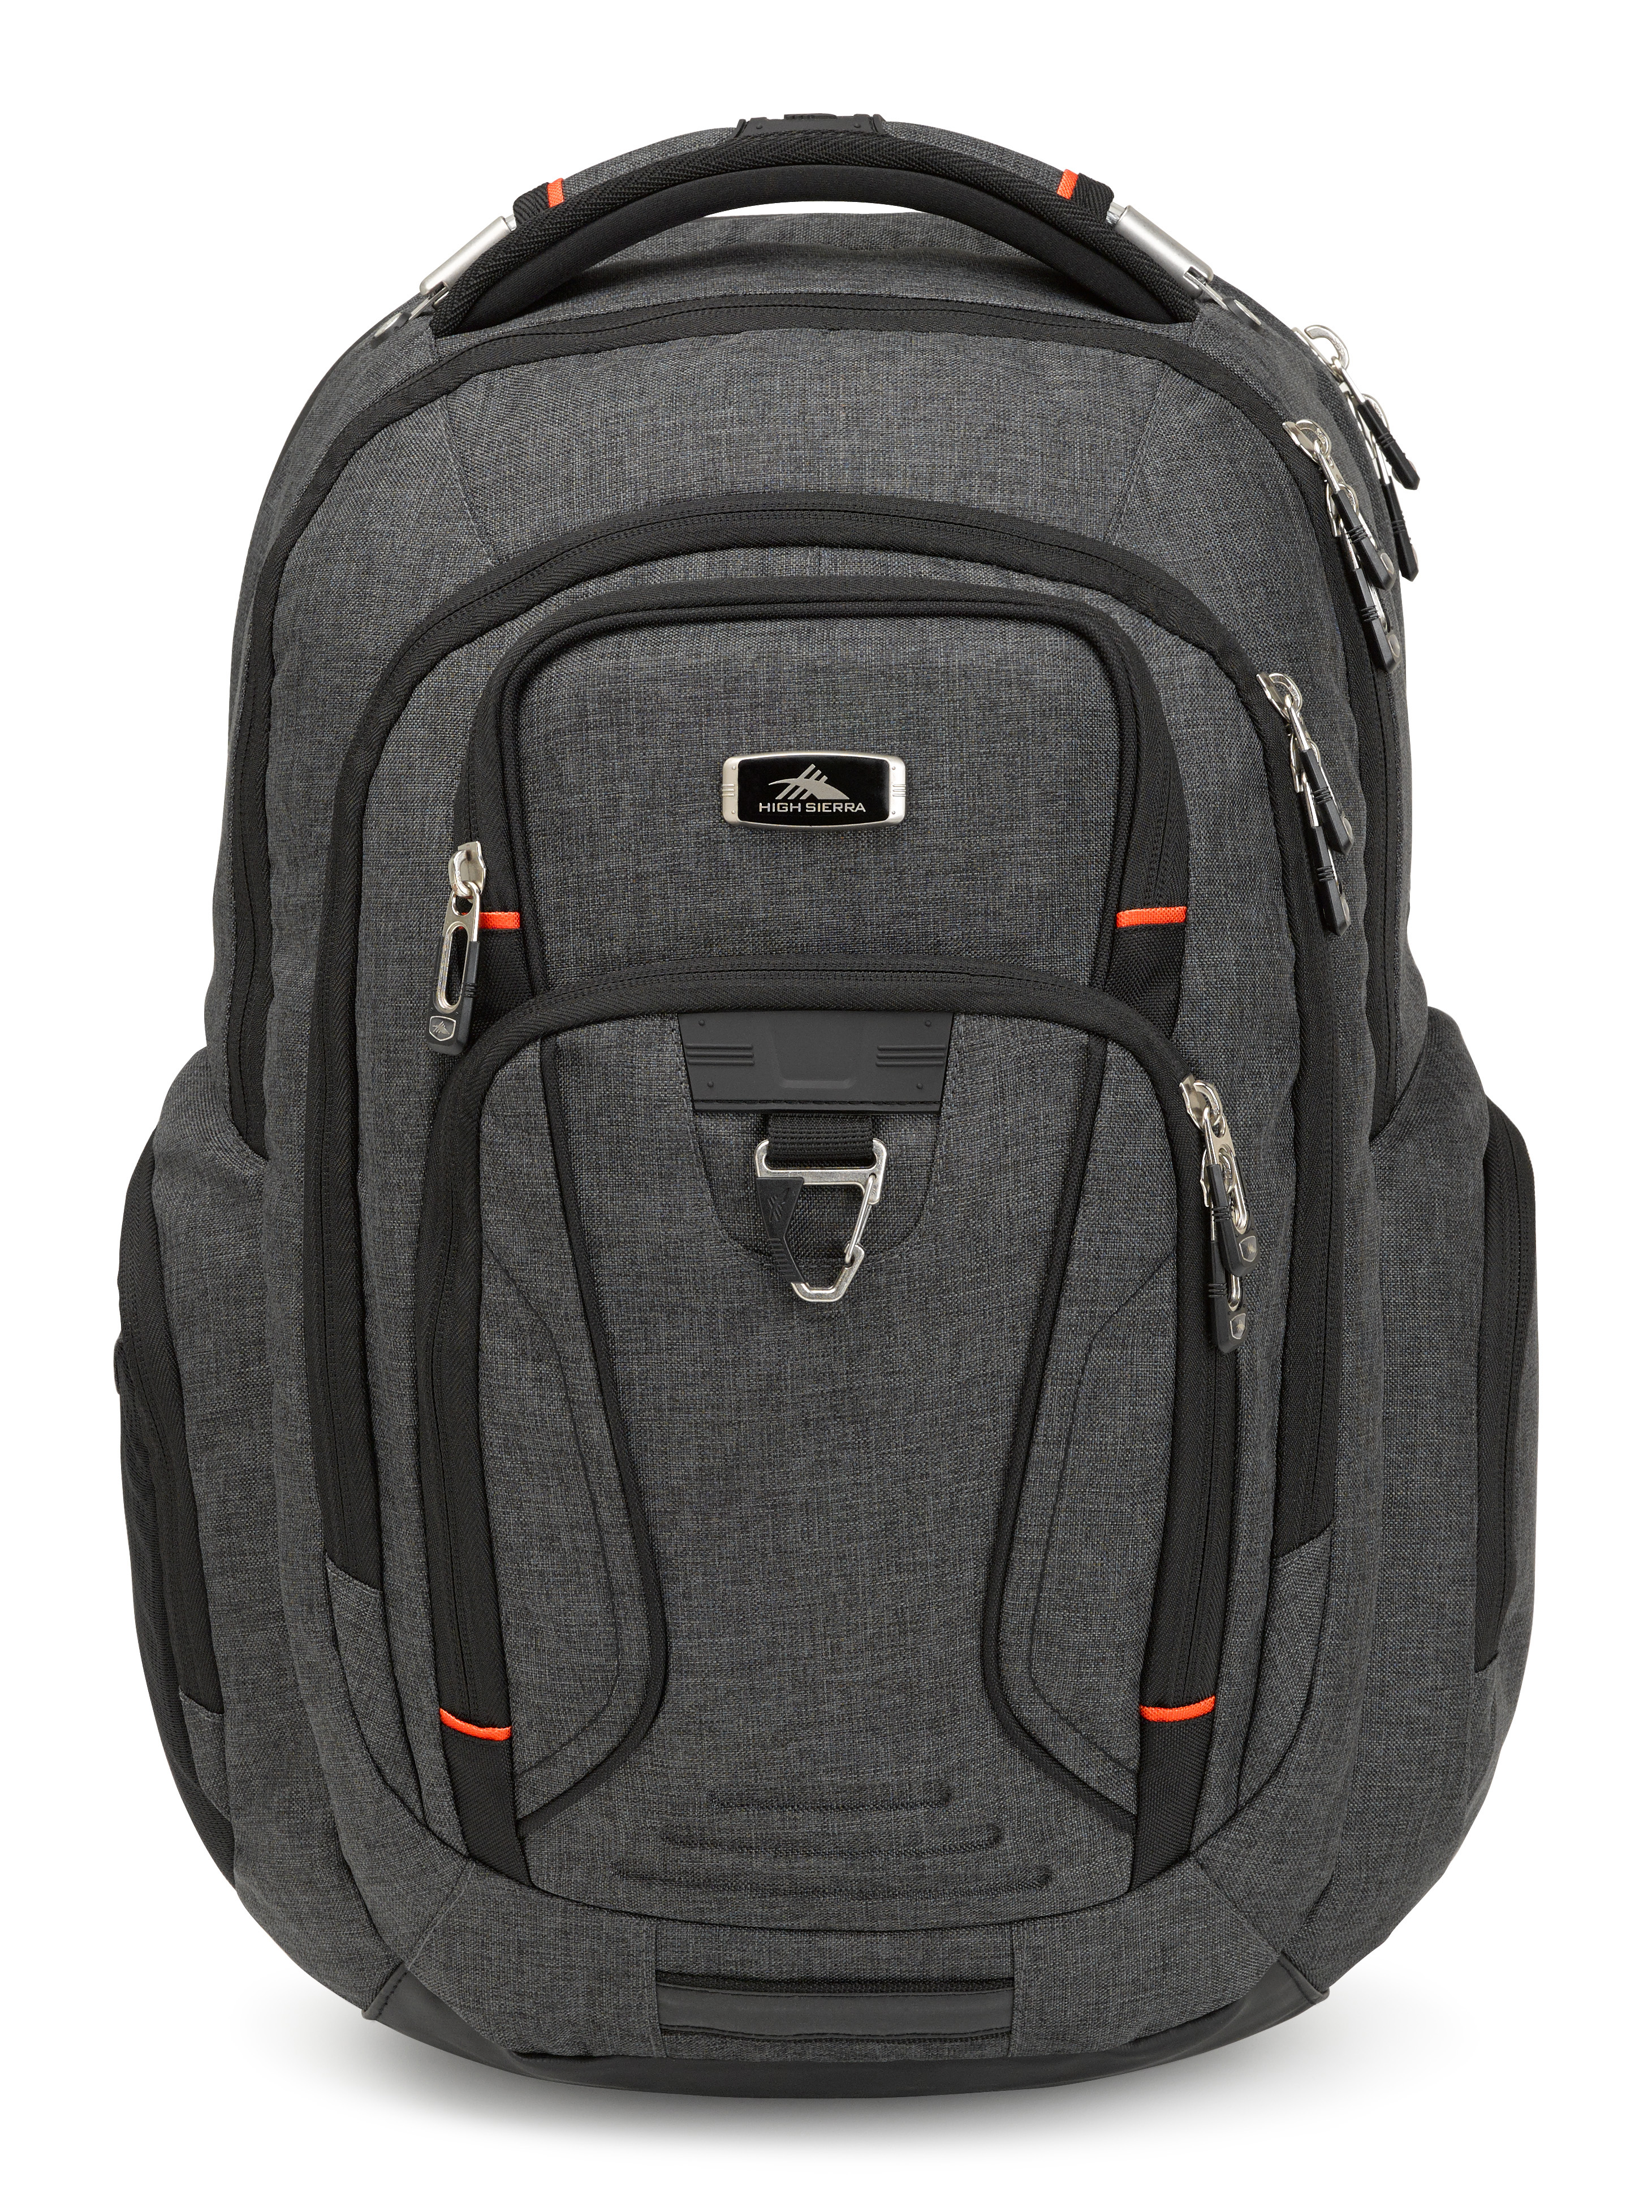 Endeavor Elite Backpack, Mercury/Heather | Power Sales